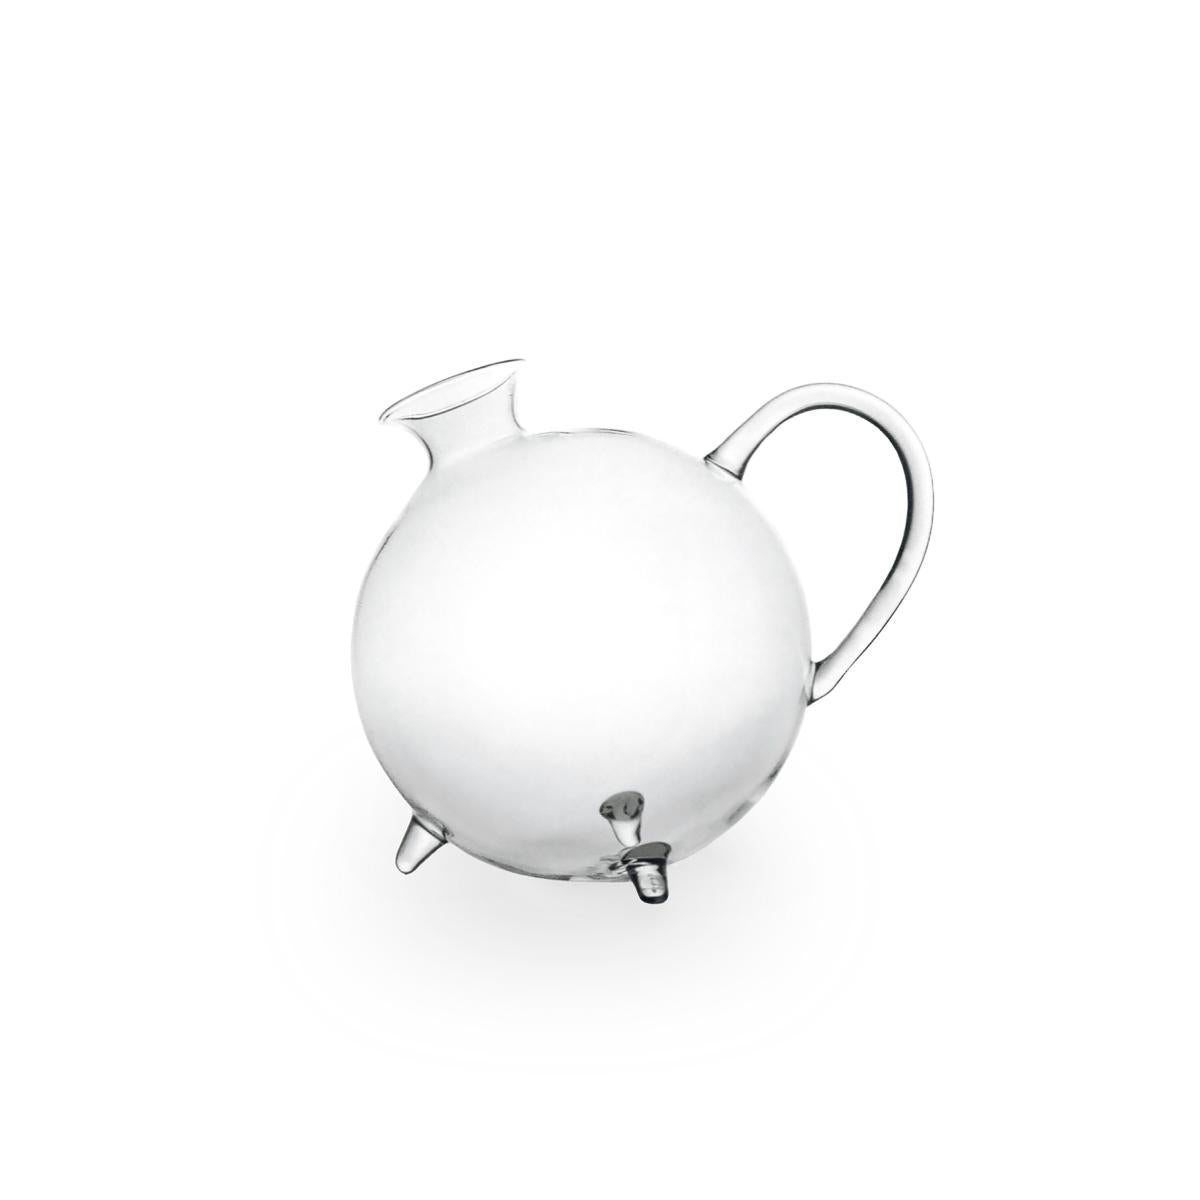 Piggy, entworfen von Aldo Cibic, ist ein handgefertigter Krug aus geblasenem Borosilikatglas. Die runden Linien machen das Schweinchen zu einem ironischen, raffinierten und gleichzeitig vielseitigen Objekt, das sowohl für Wasser als auch für Wein